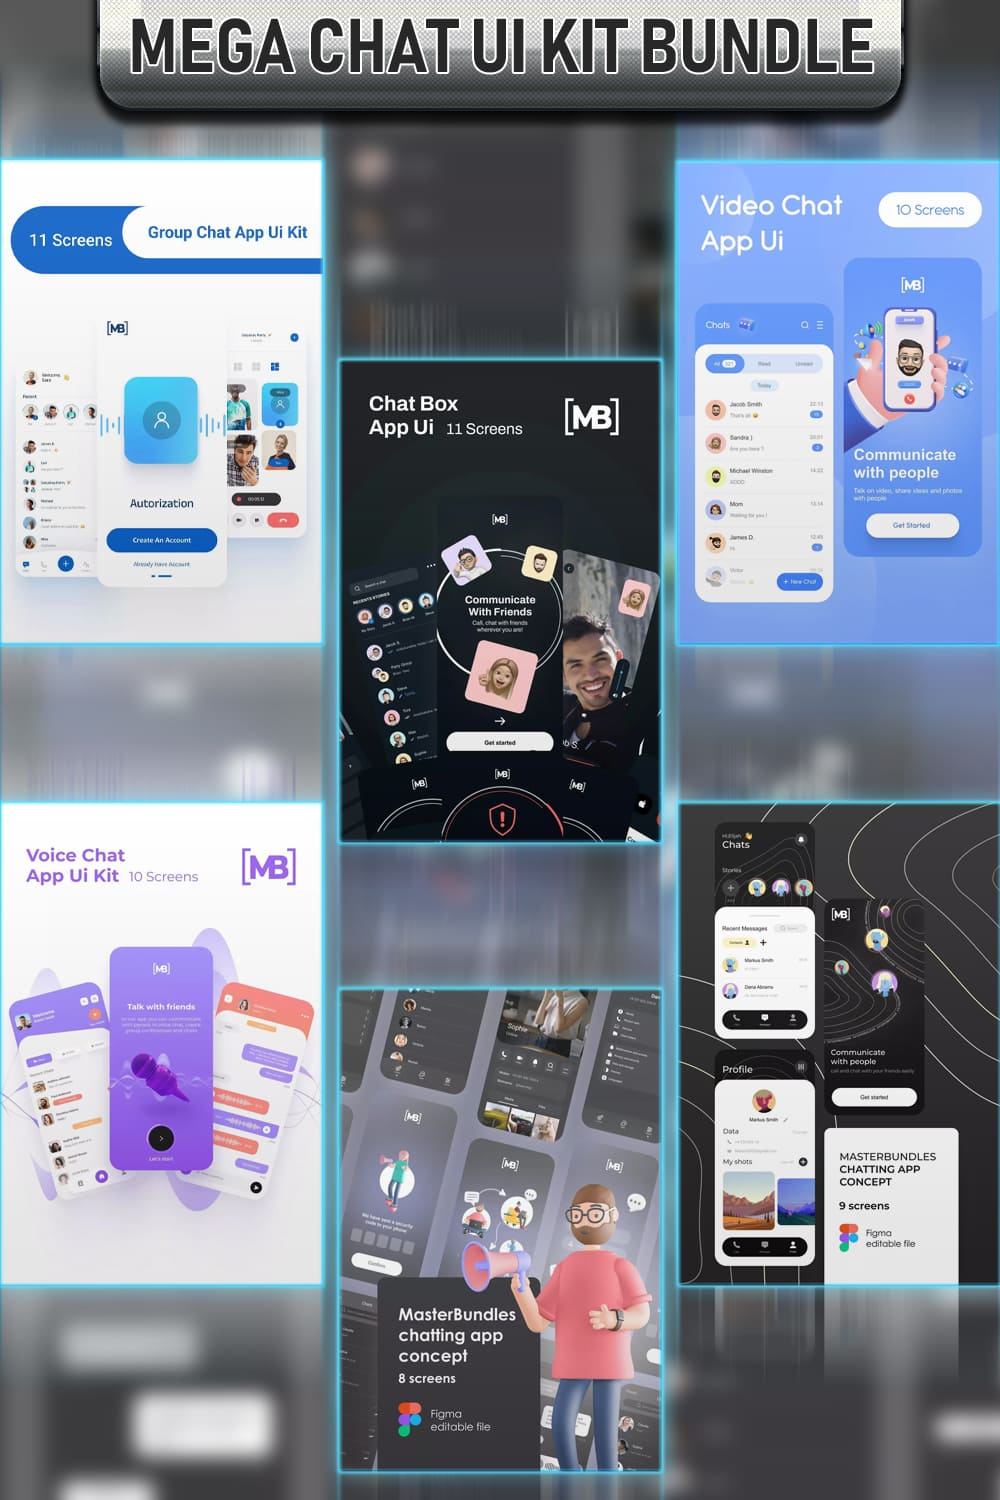 Mega Chat UI Kit Bundle Pinterest.